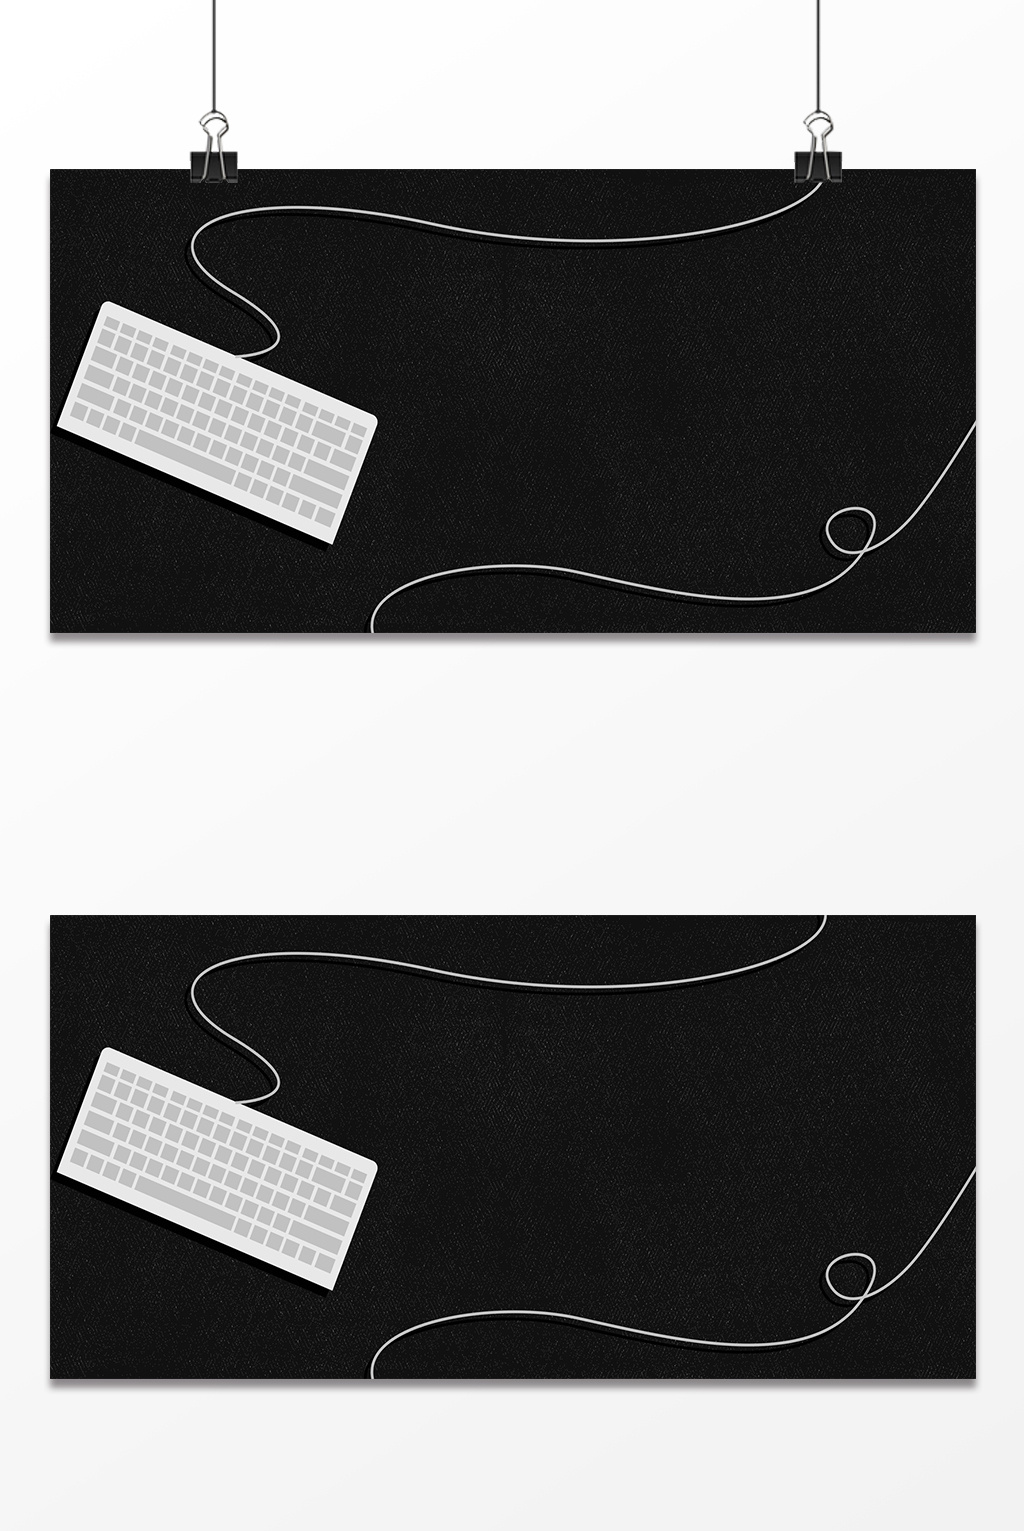 黑色键盘手机壁纸图片